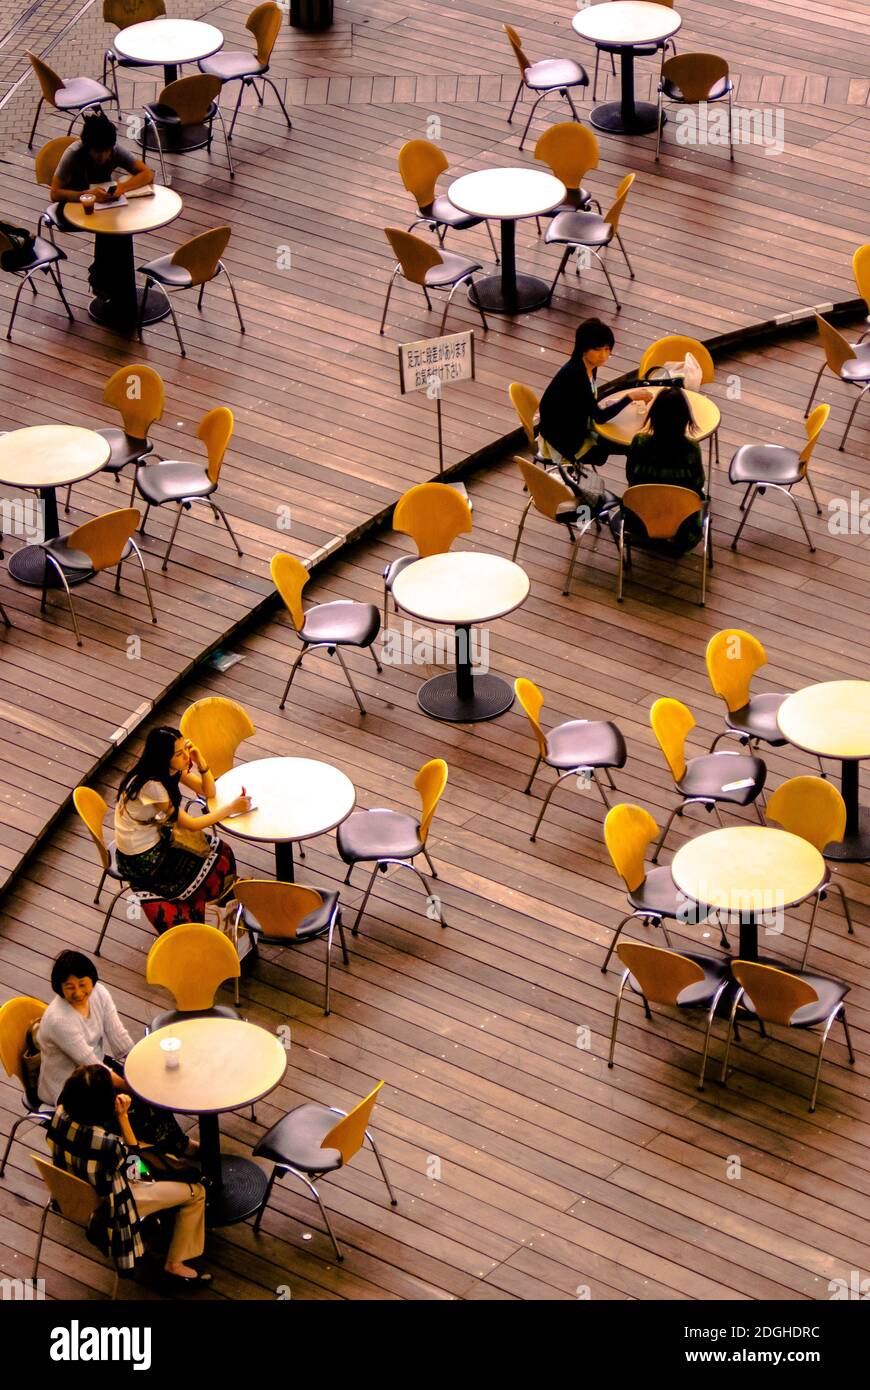 Terrasse de café moderne à Tokyo Japon Banque D'Images